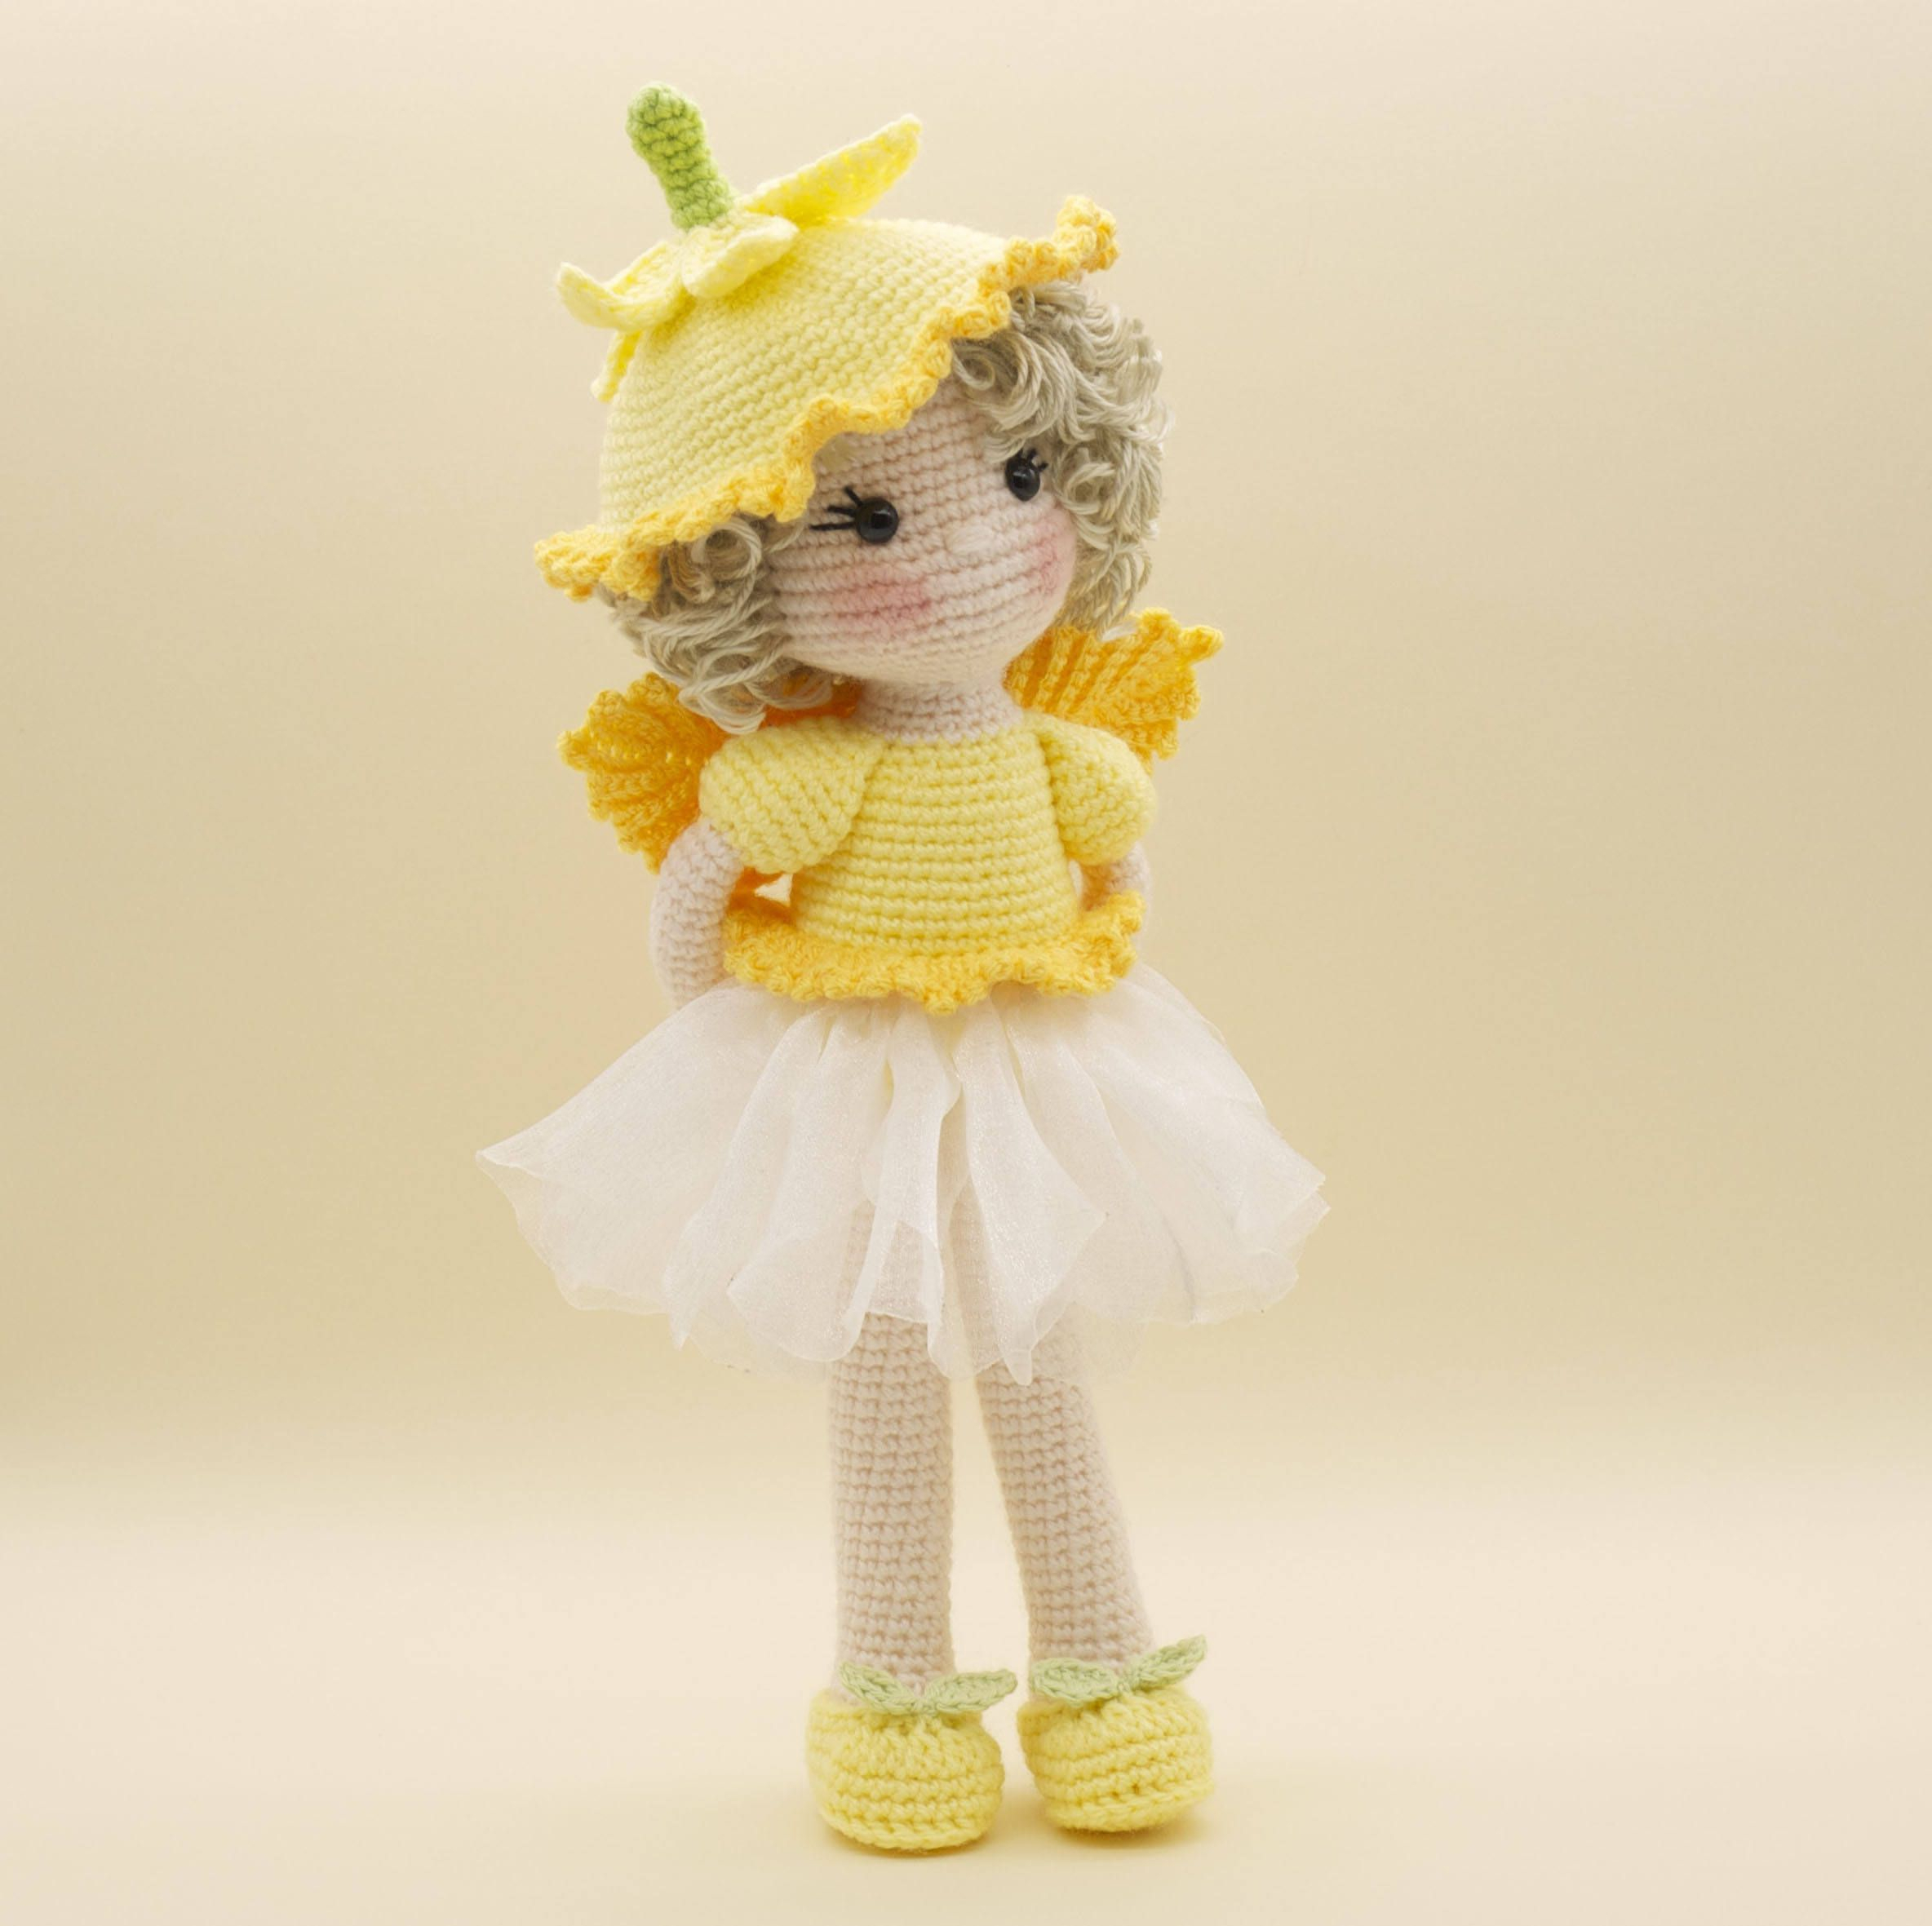 Crochet Sweet Pea Flower Pattern Amigurumi Crochet Doll Sweet Daffodil Flower Fairy With